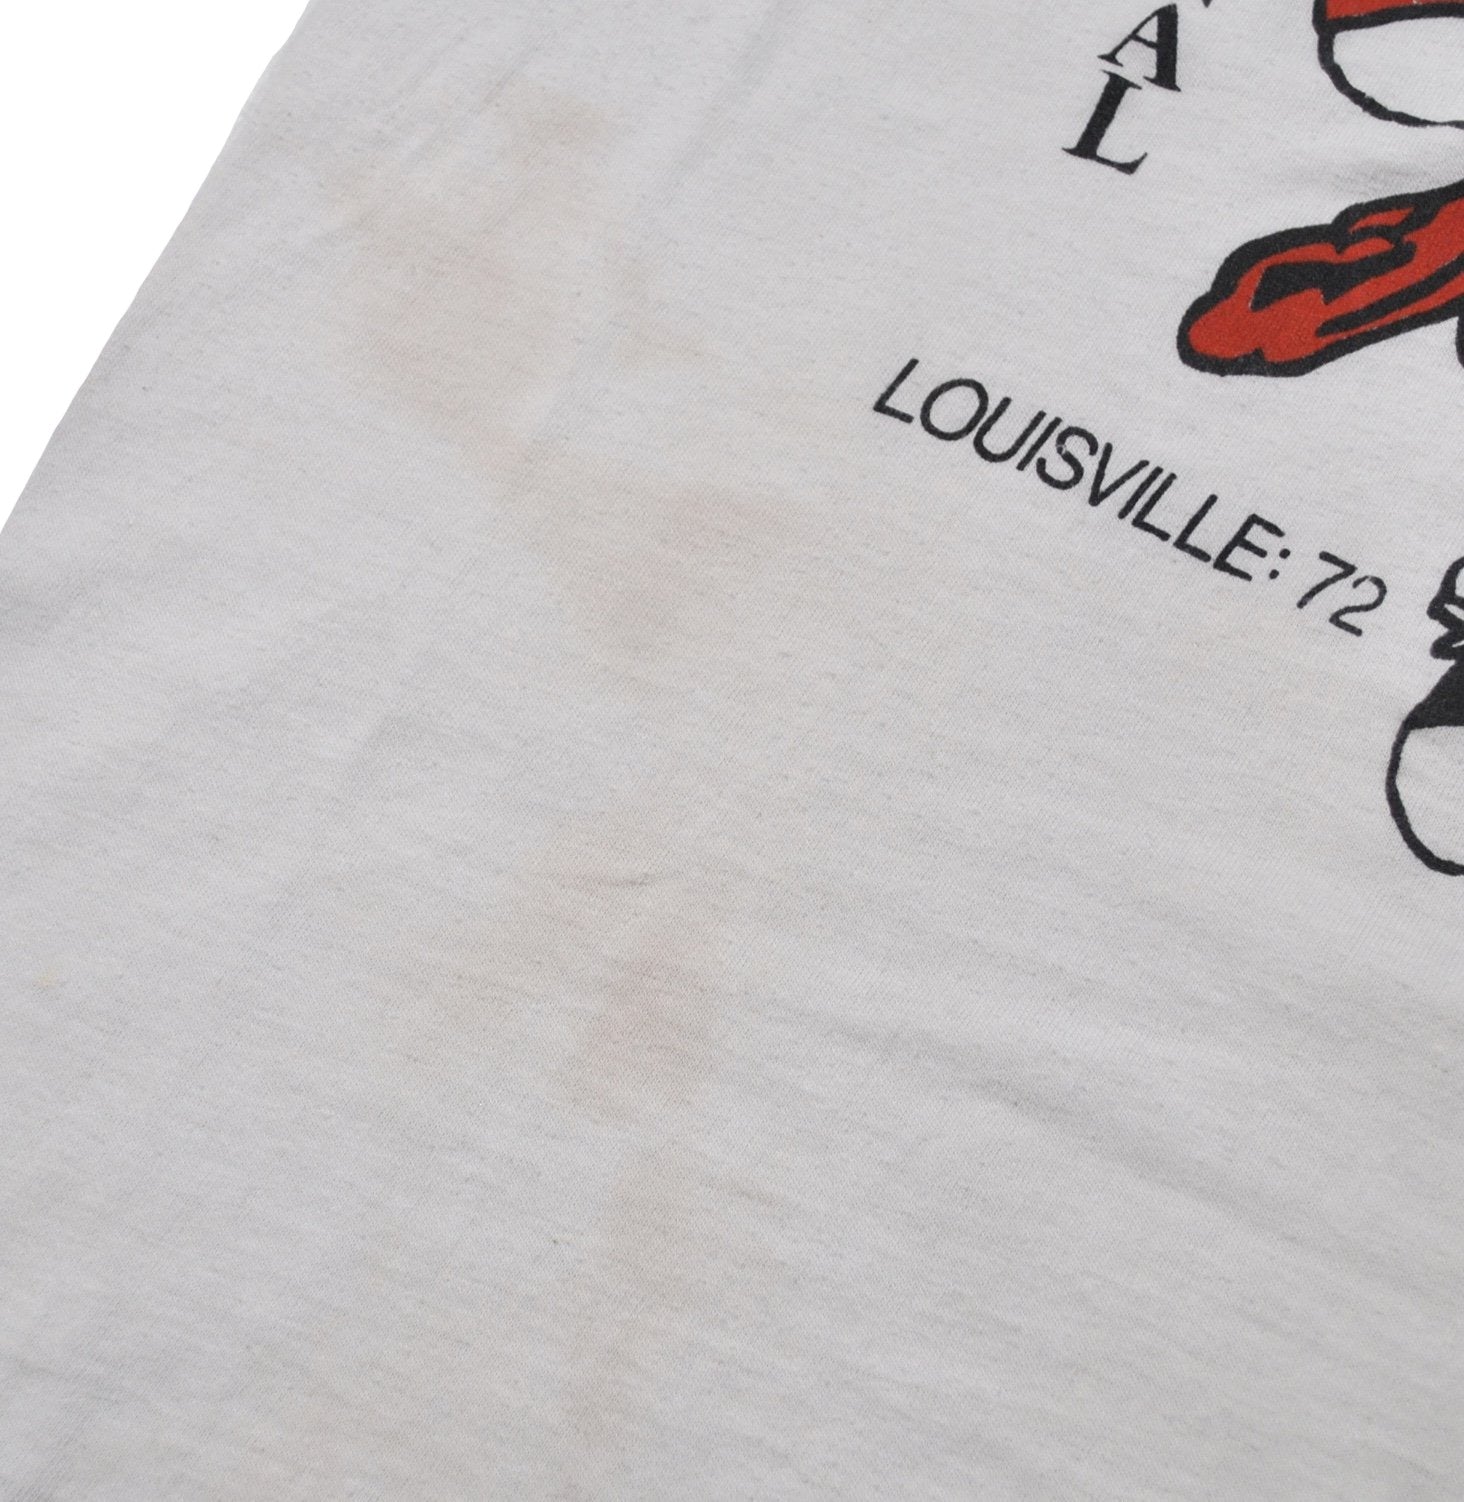 Vintage University of Louisville Cardinals 1986 National Champs T-Shirt Sz  S/M